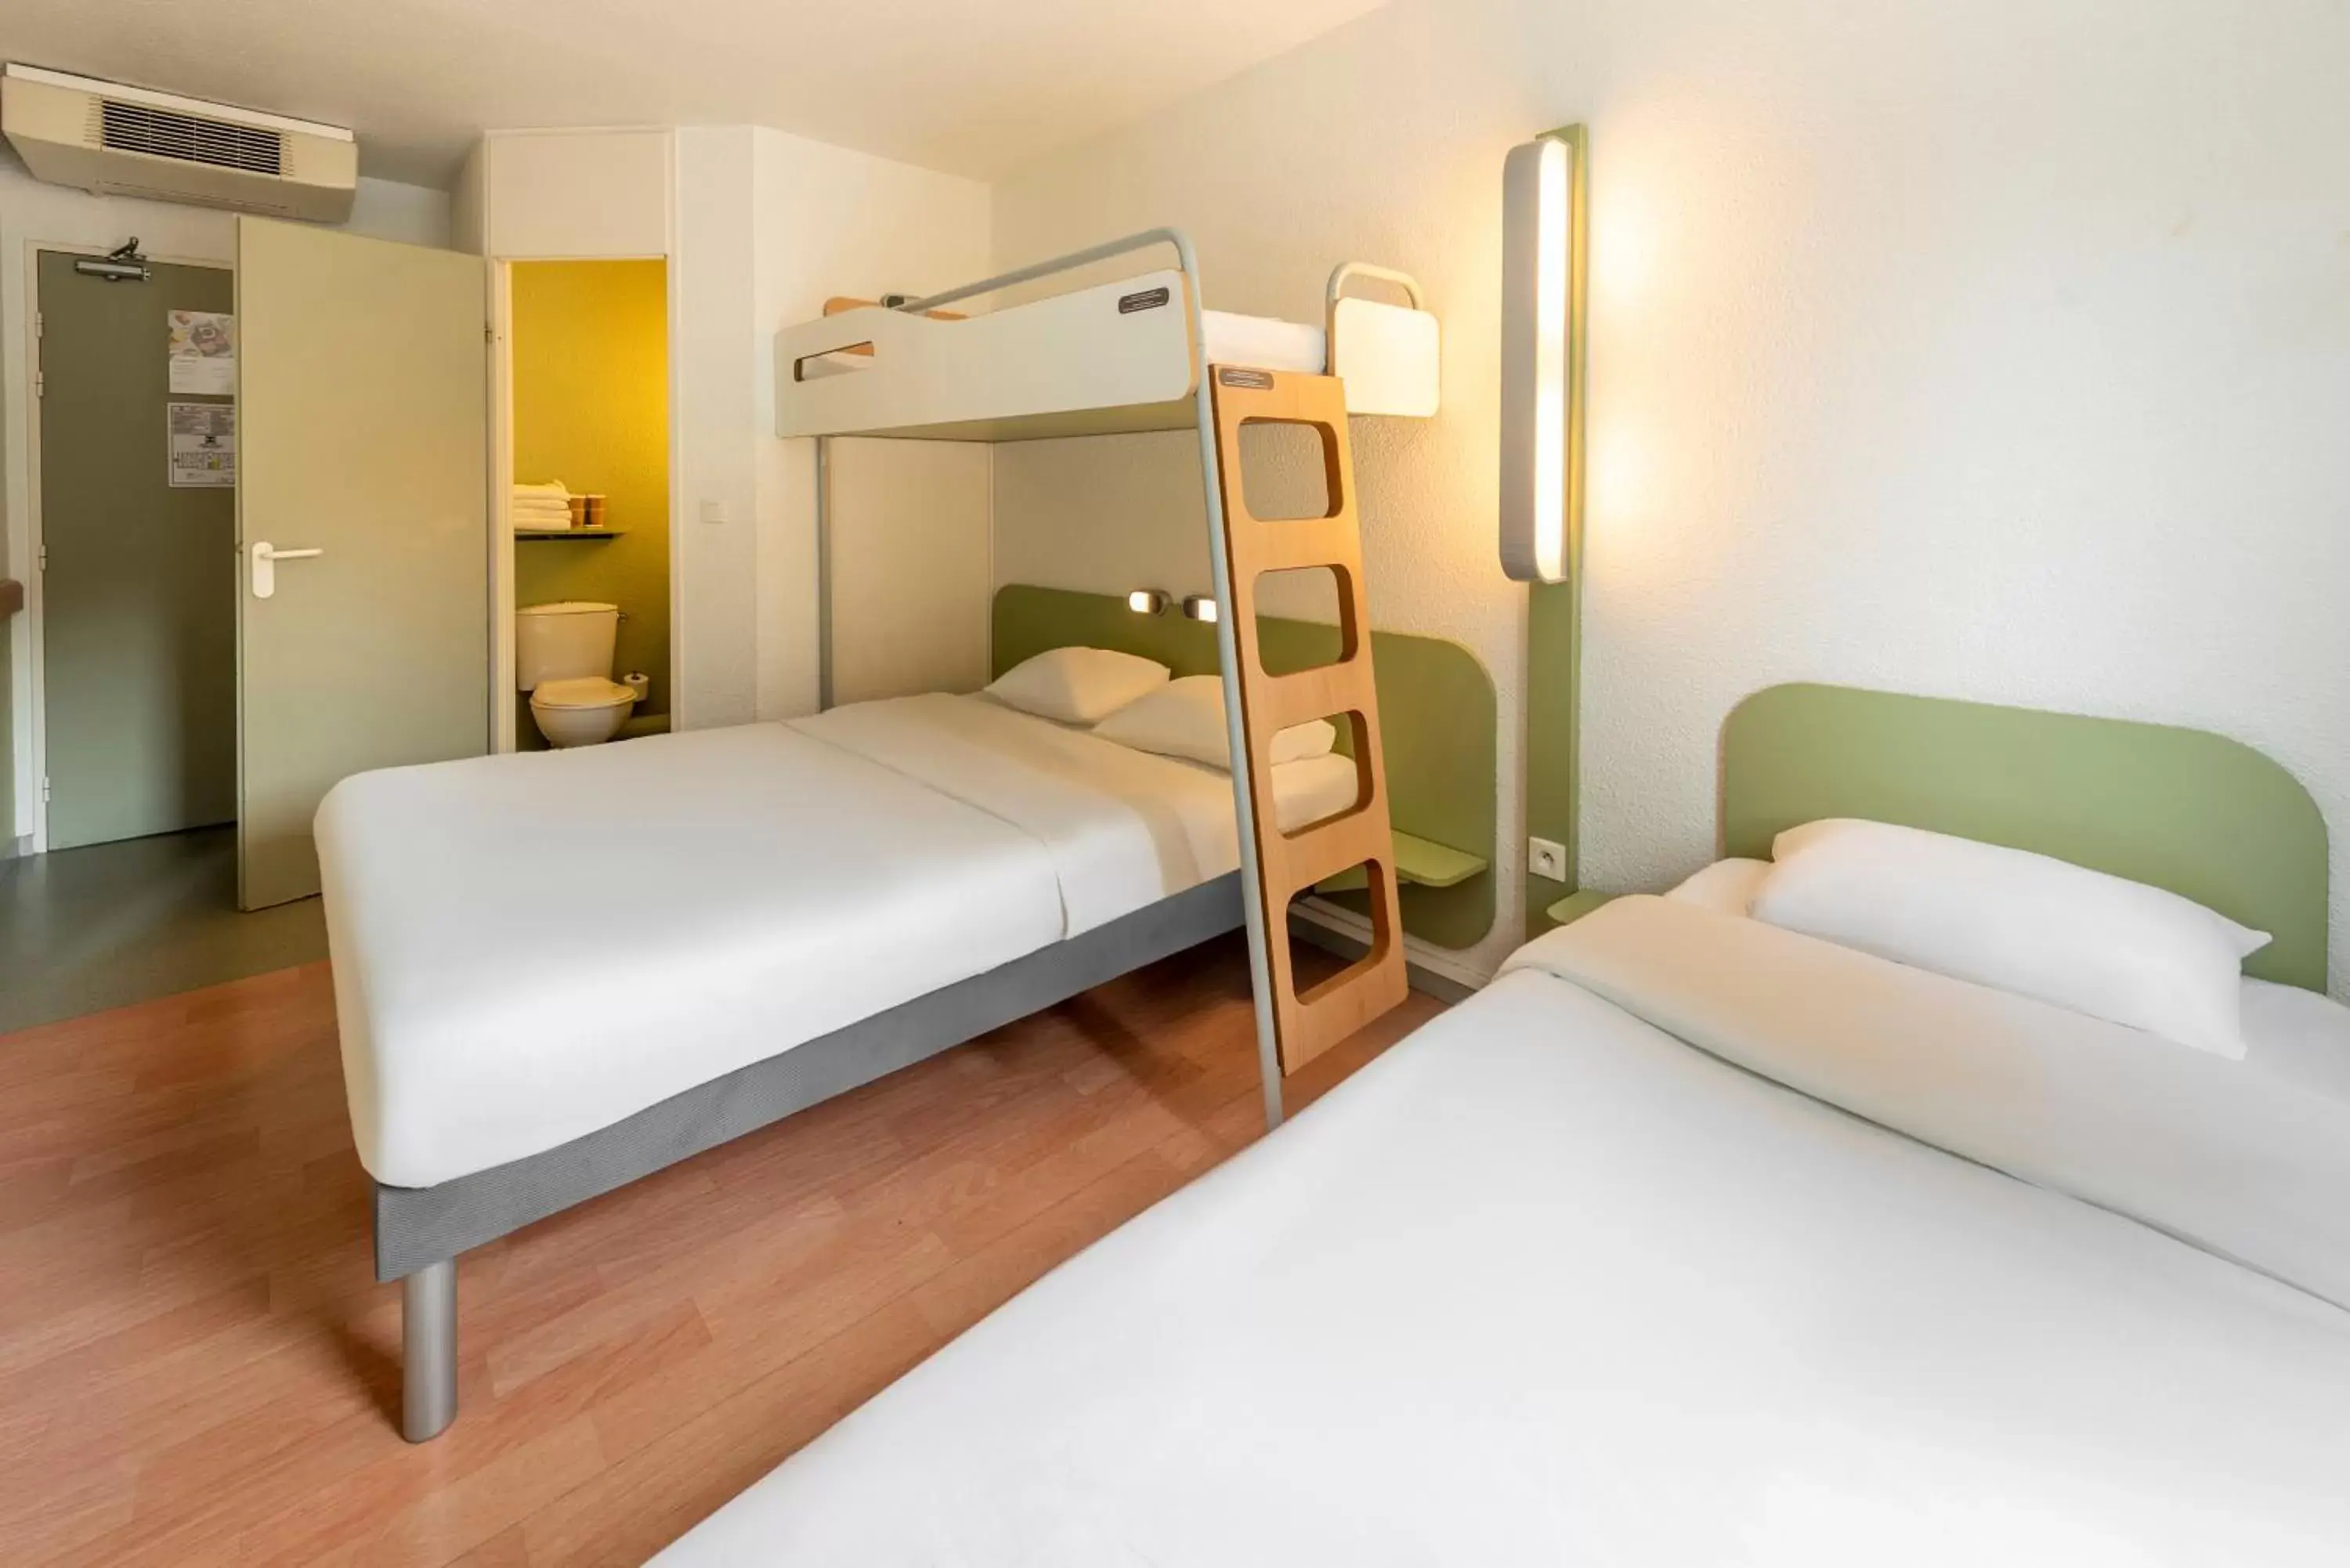 Bedroom, Bunk Bed in B&B HOTEL Toulouse Cité de l'Espace Gonord